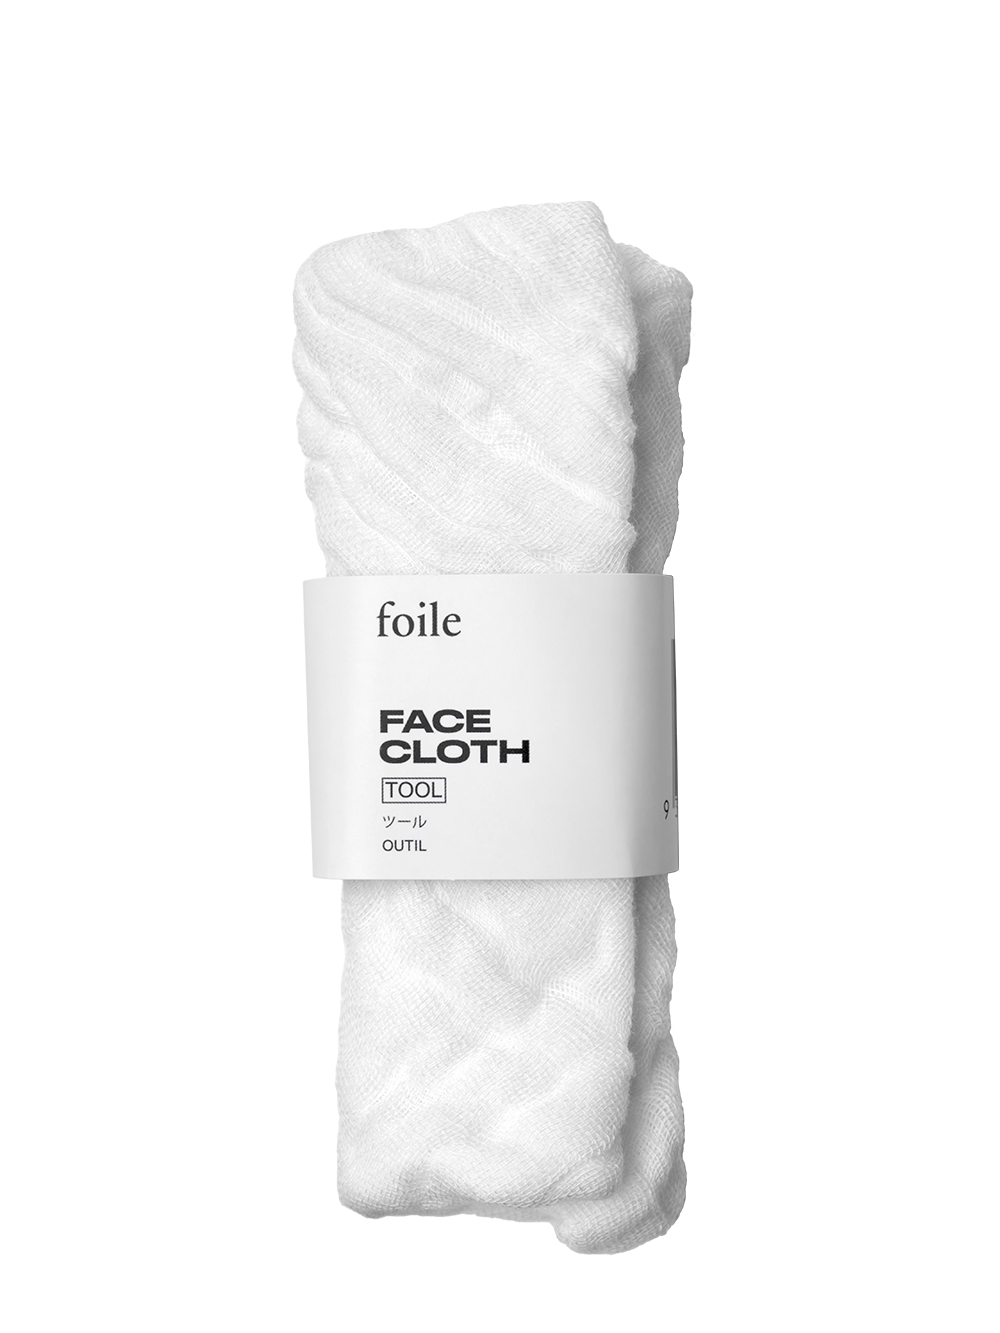 Foile - Face Cloth